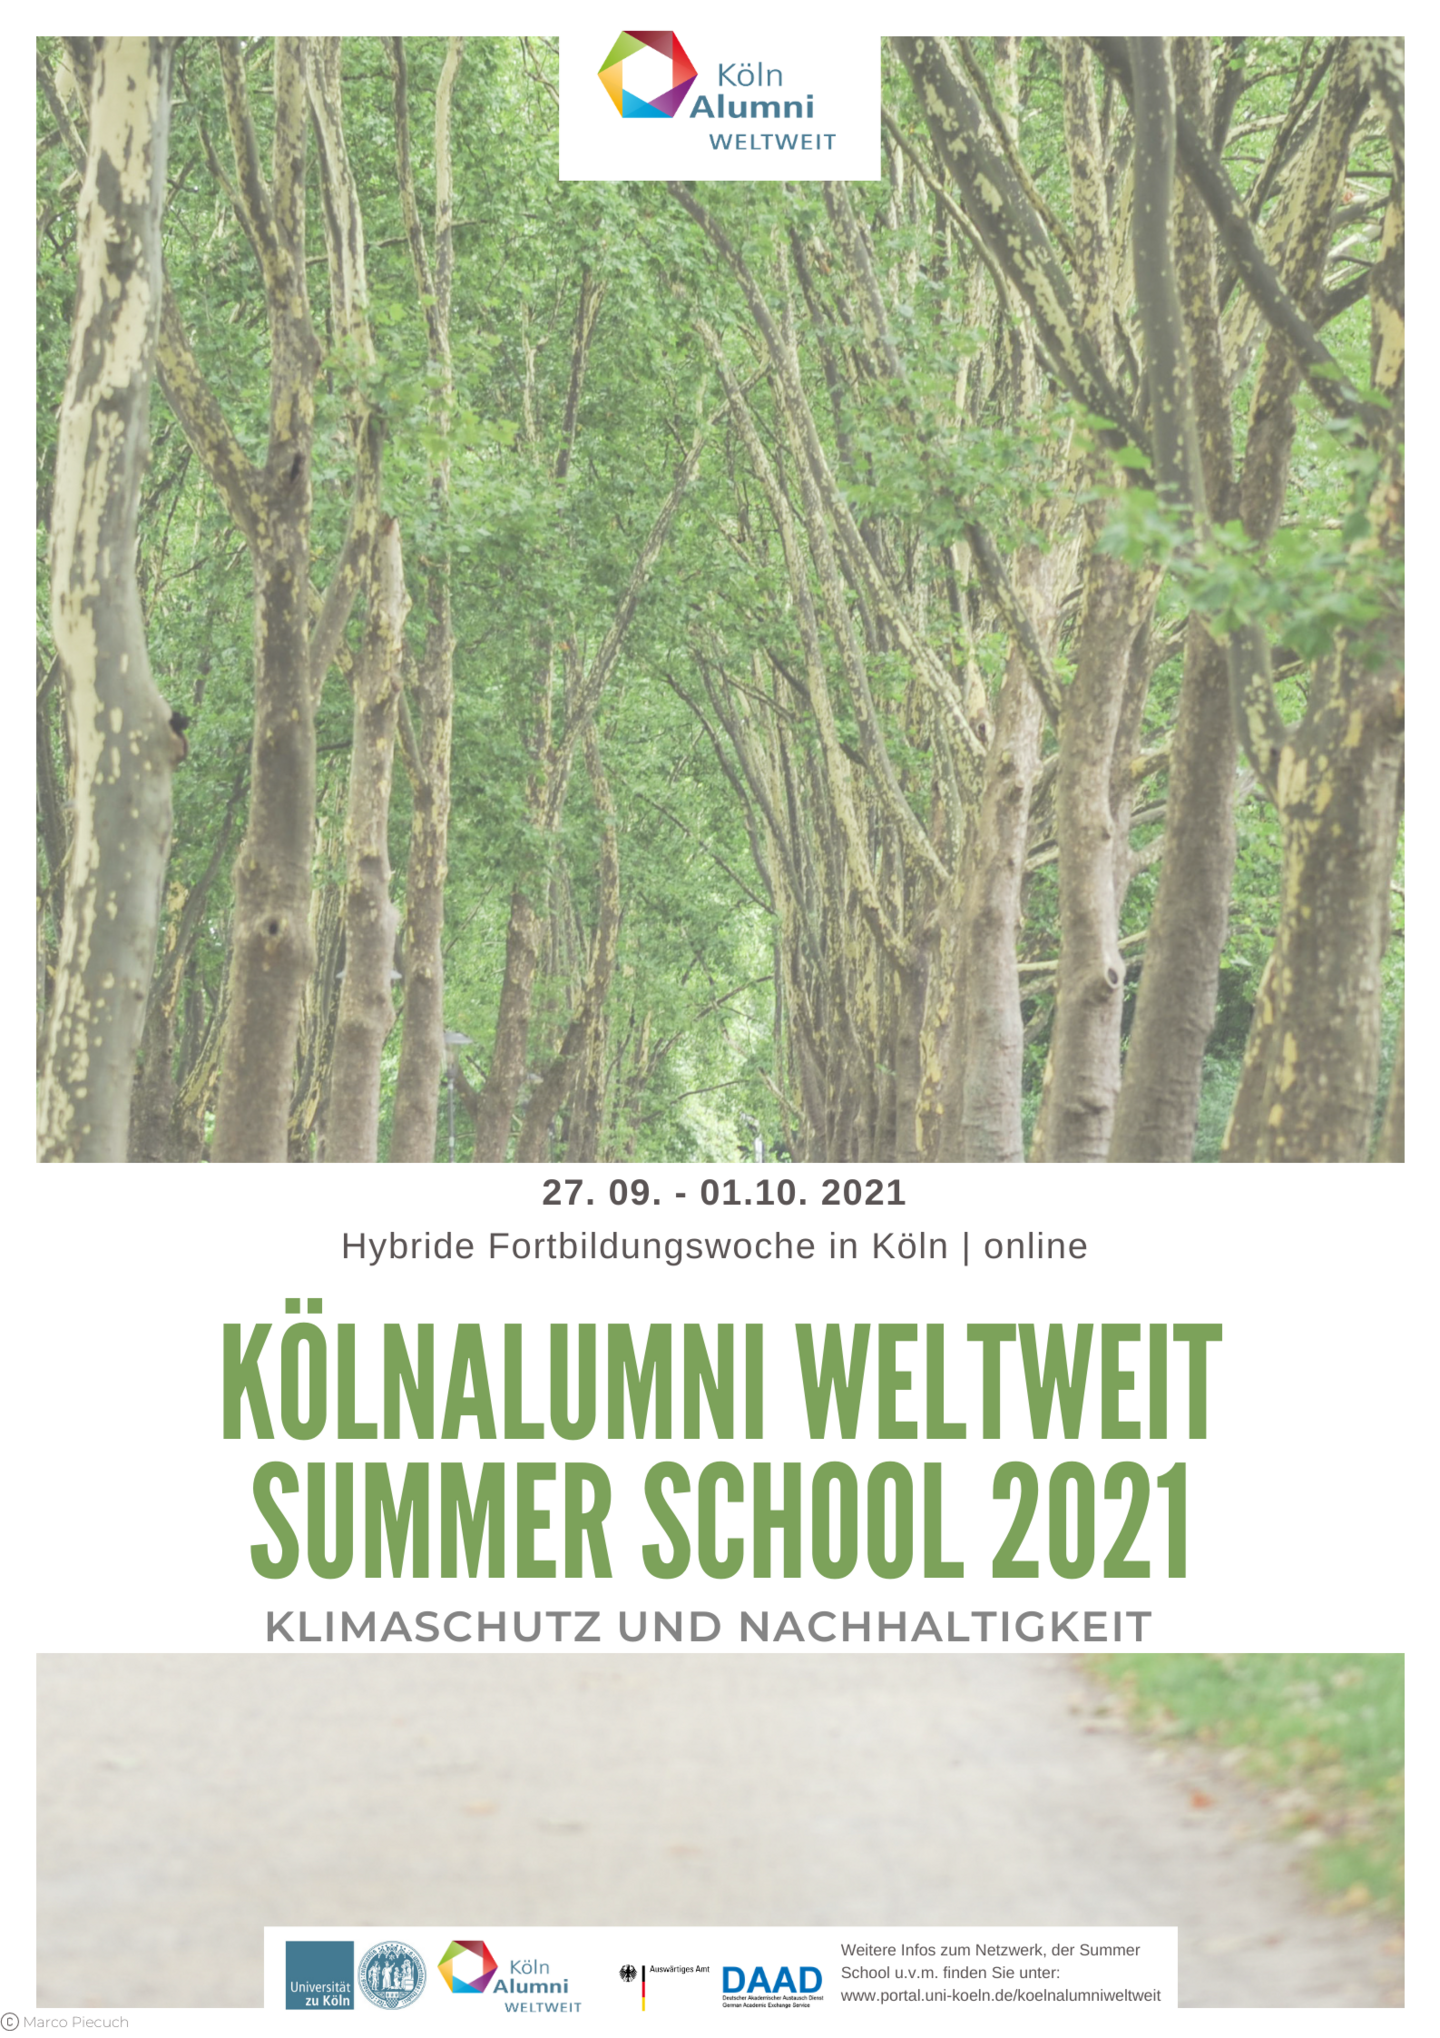 KölnAlumni WELTWEIT Summer School Poster 